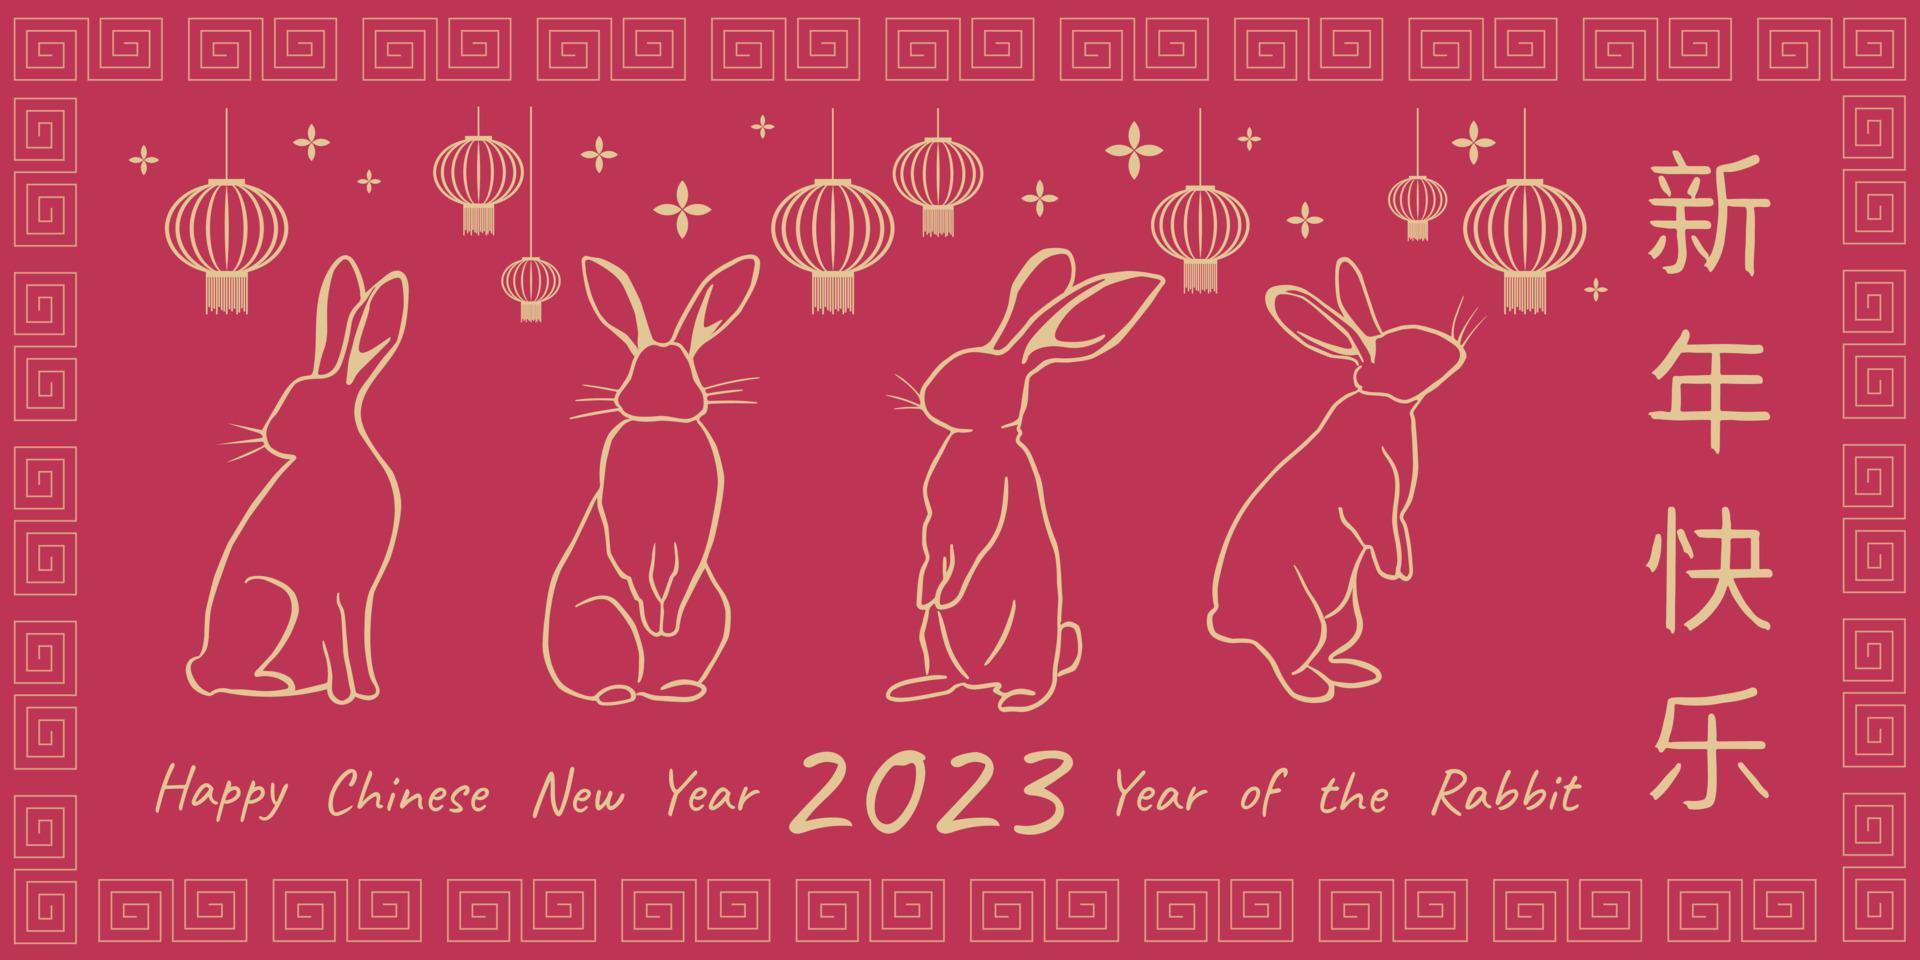 nouvel an chinois 2023 année du lapin. carte de voeux avec symbole du zodiaque traditionnel - lapins. décrit des lapins dorés avec des lanternes chinoises sur le fond viva magenta avec des salutations chinoises. vecteur